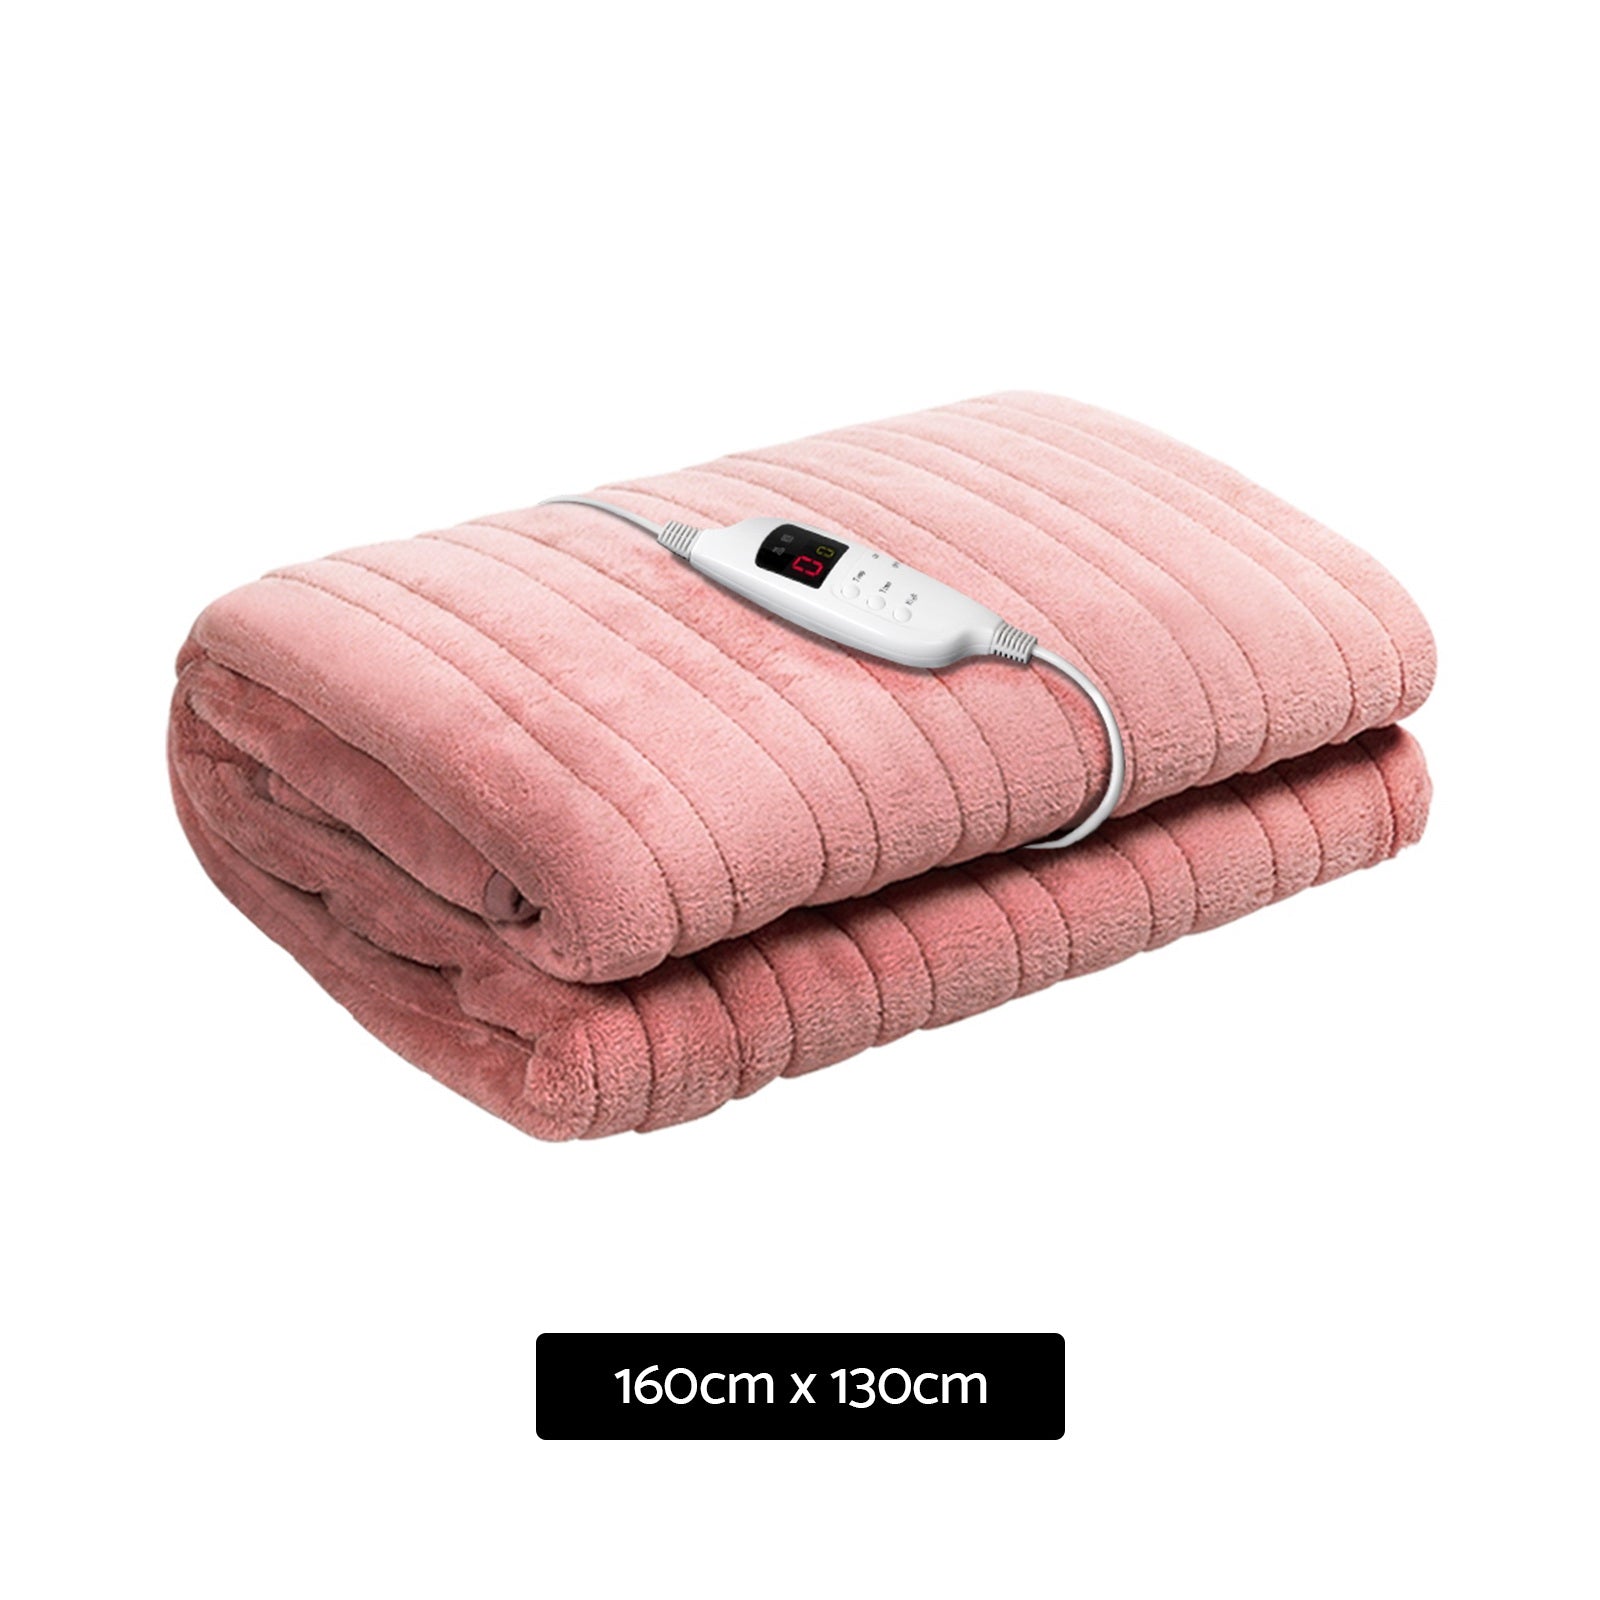 Giselle Electric Throw Rug Heated Blanket Fleece Pink